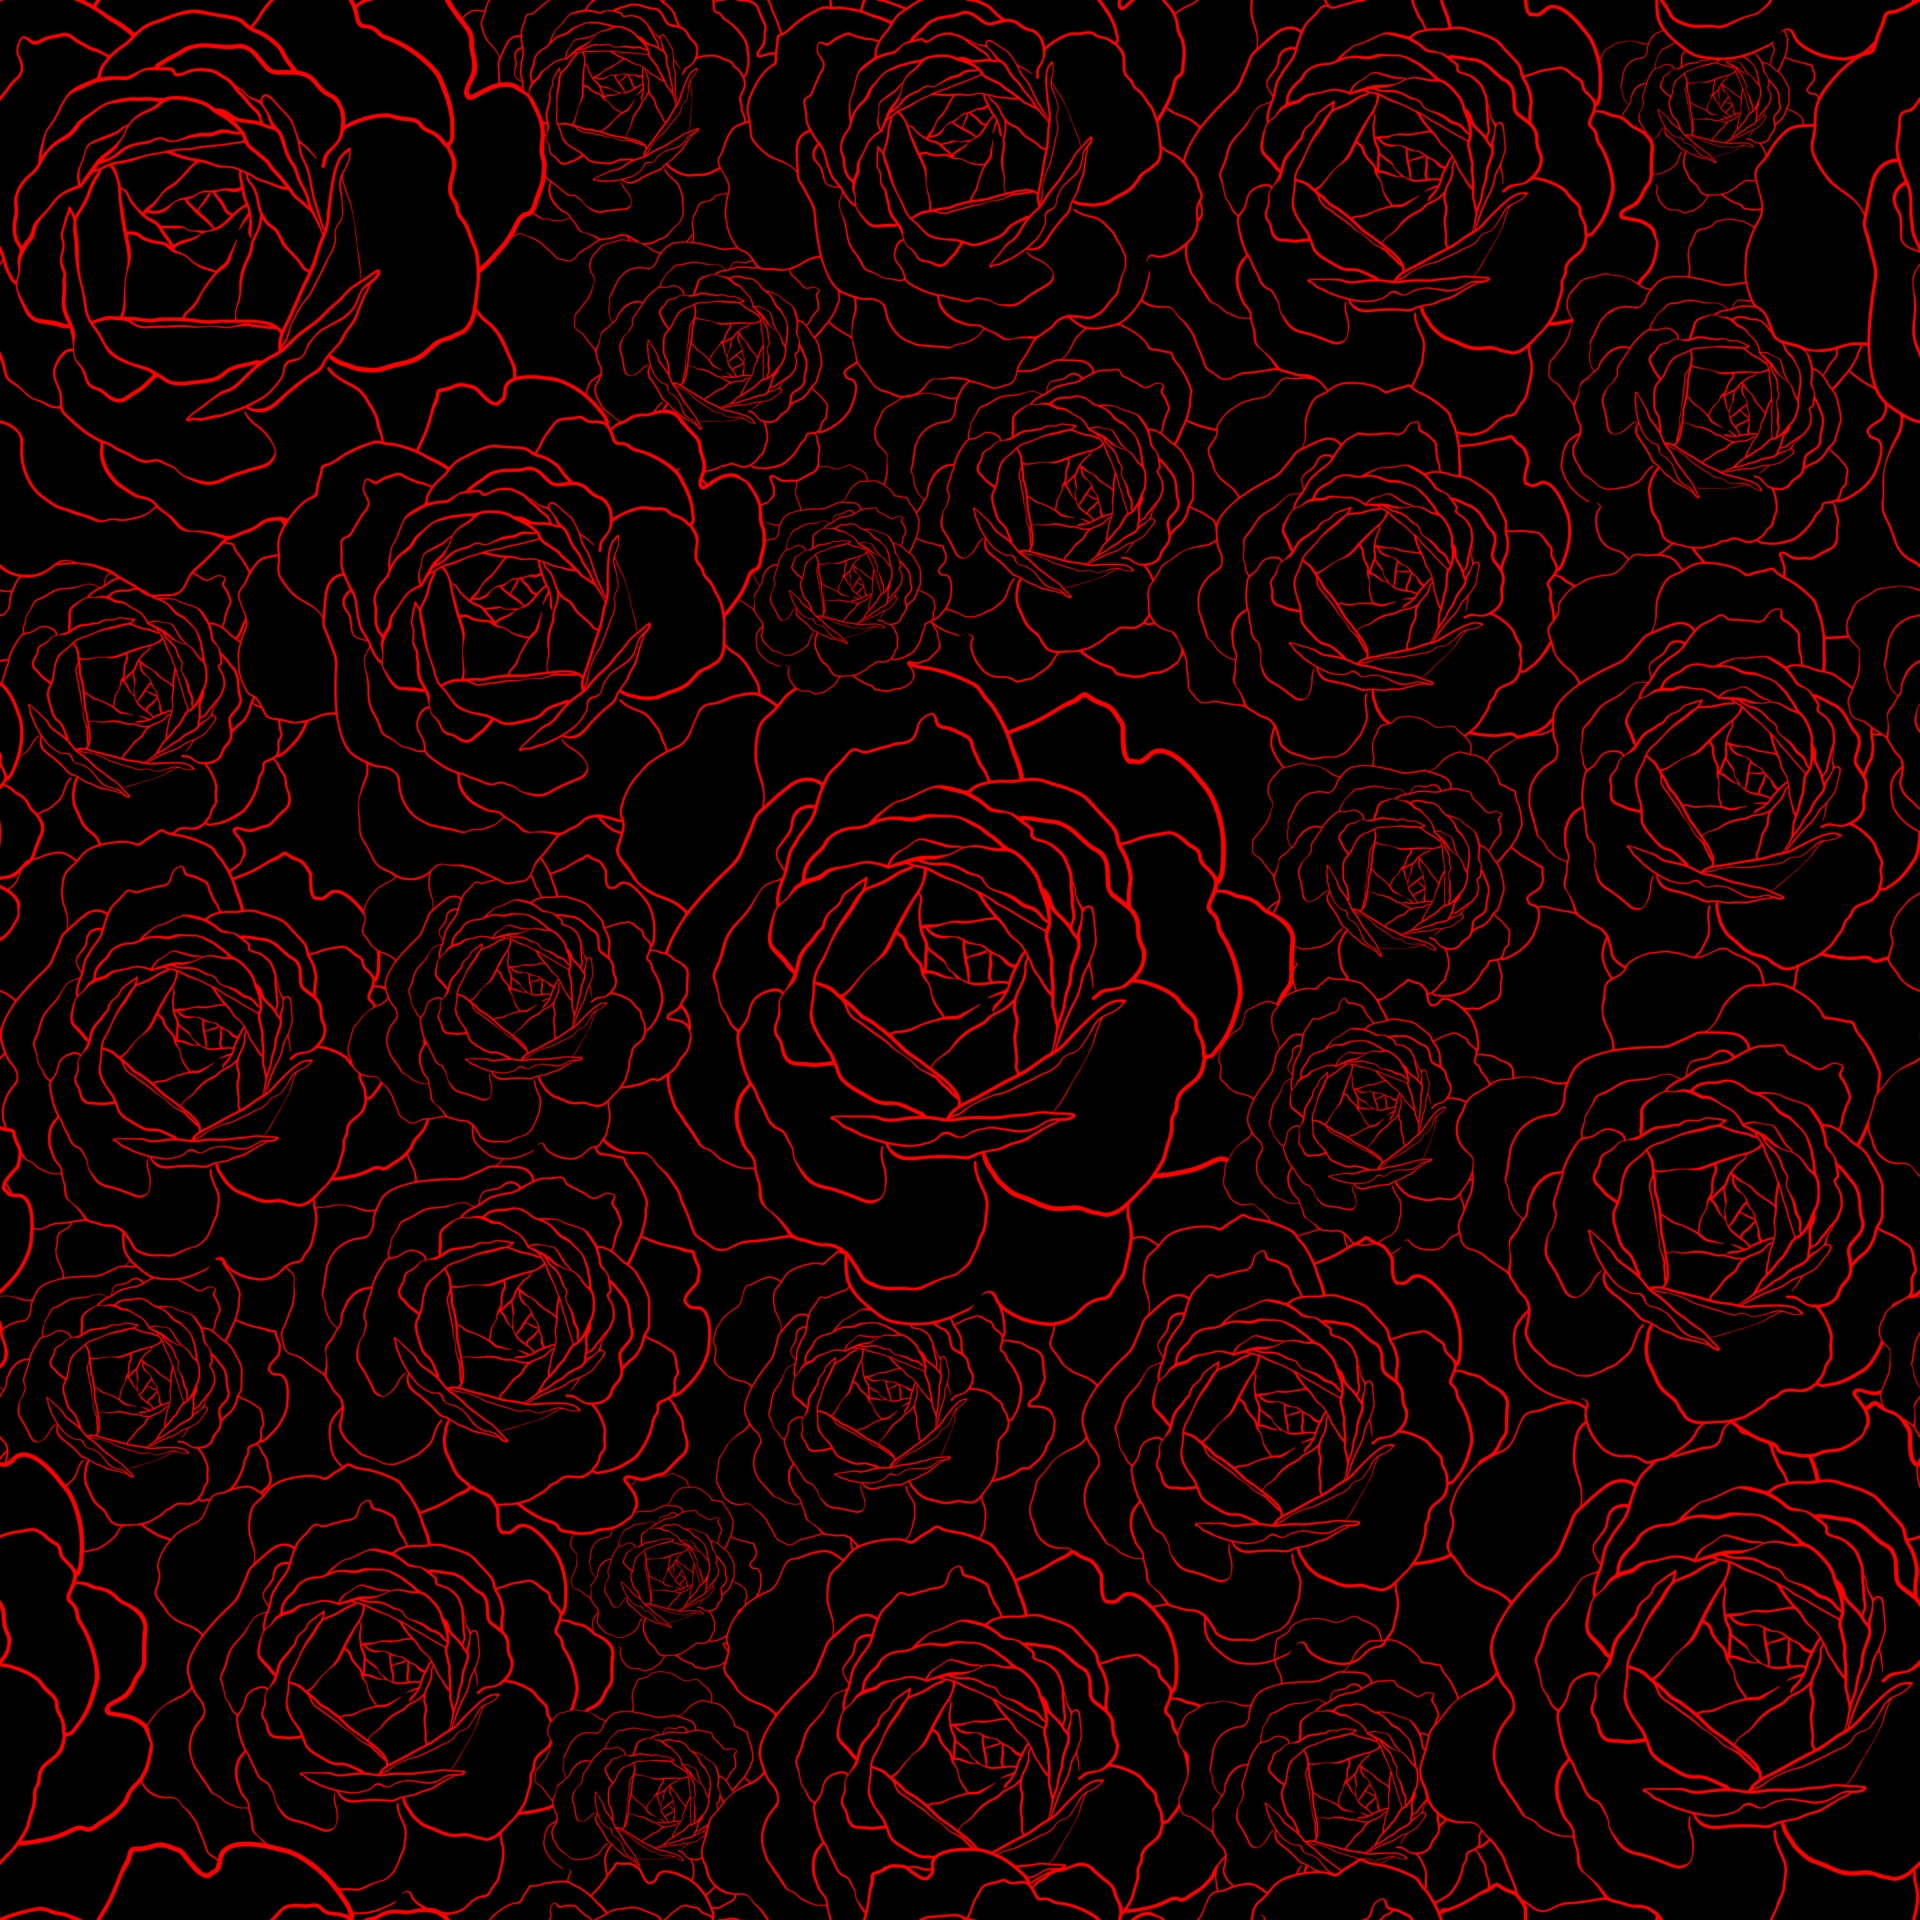 Hoạ tiết hoa hồng đỏ trên nền đen tạo nên một phong cách thời trang cá tính và nổi bật. Dừng lại để ngắm nhìn hình ảnh này và cảm nhận sự mạnh mẽ và độc đáo của nó.